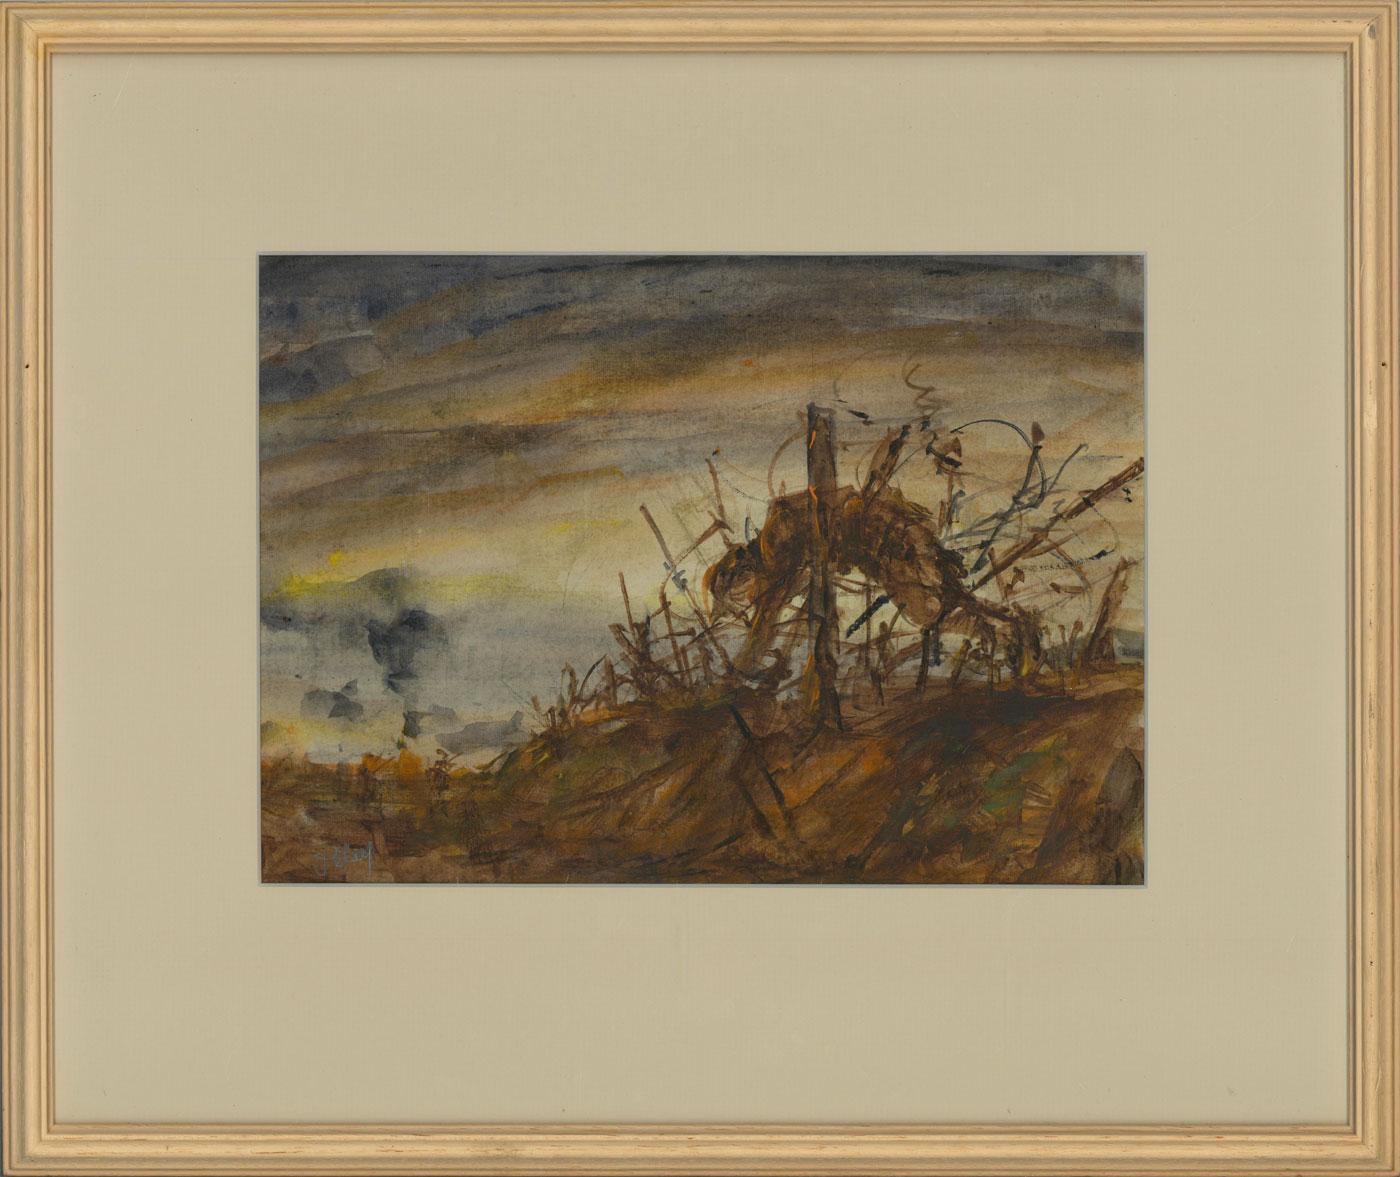 Eine erschütternde und fesselnde Schlachtfeldkomposition des britischen Künstlers Ronald Olley (geb. 1926). Ein Stacheldrahtzaun markiert eine Grenze auf umstrittenem Gebiet, wobei die aufgehängte Leiche eines Soldaten im Mittelpunkt steht. Olley